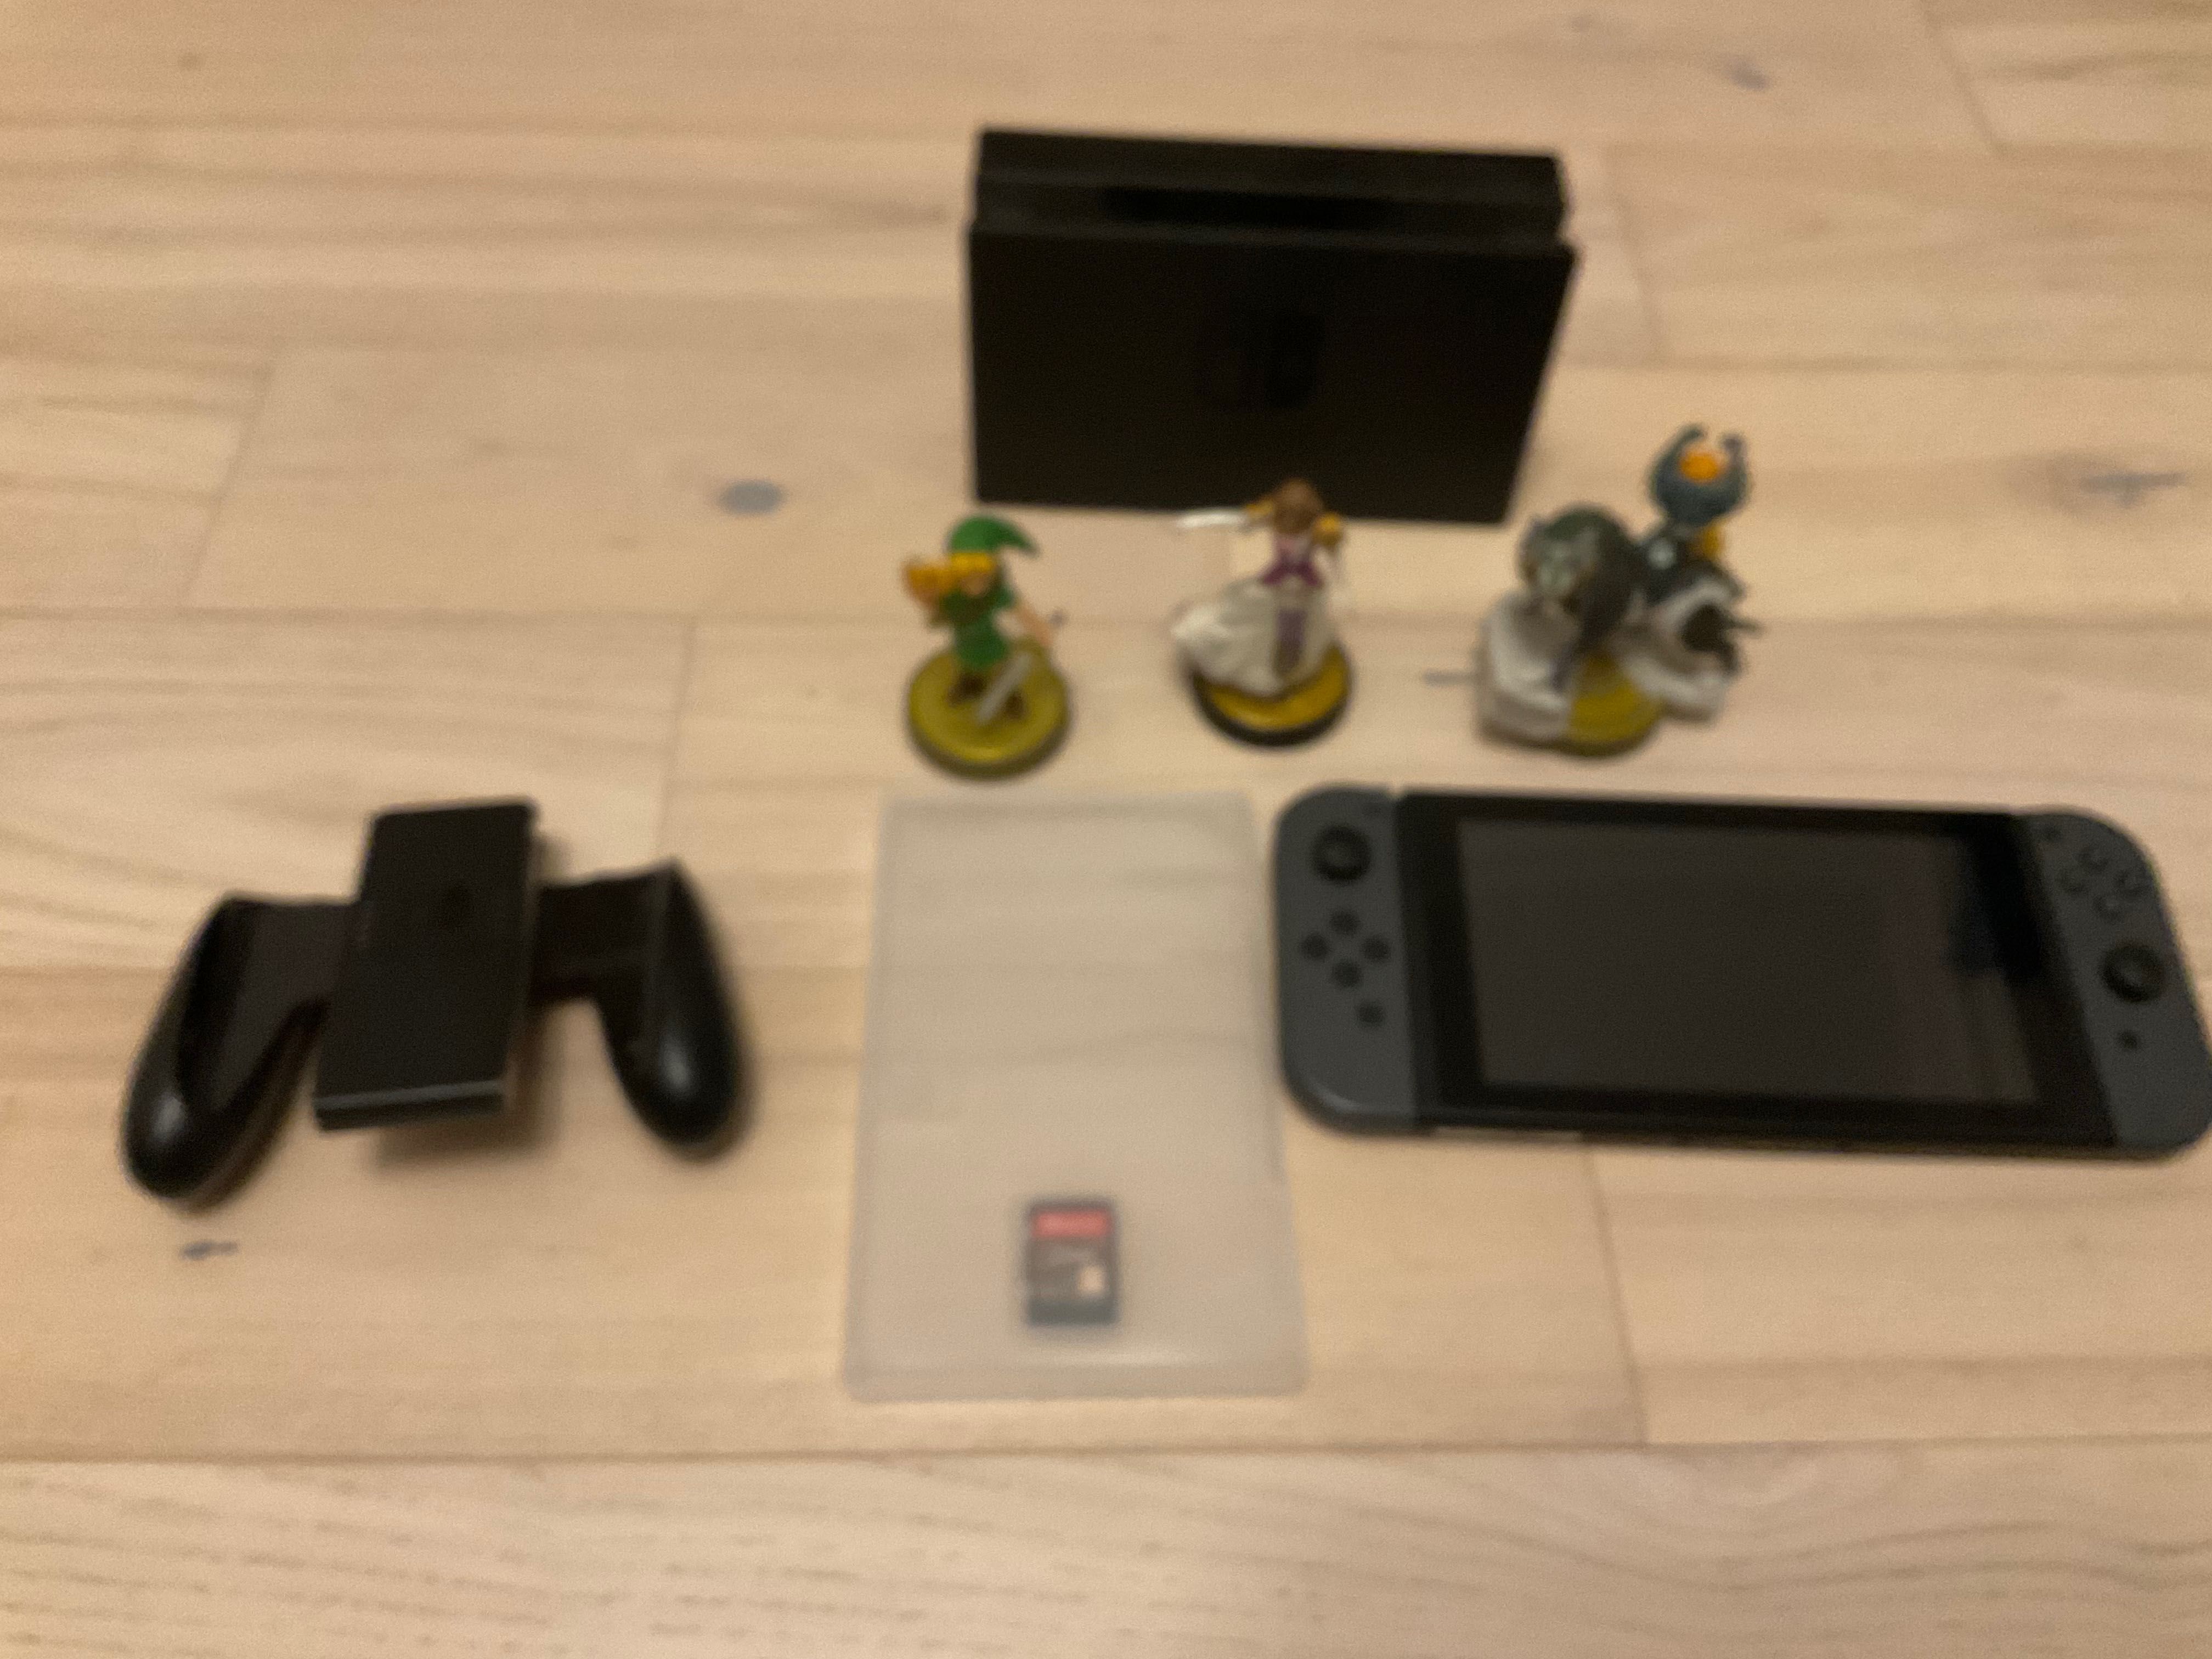 Nintendo Switch, Amiibo